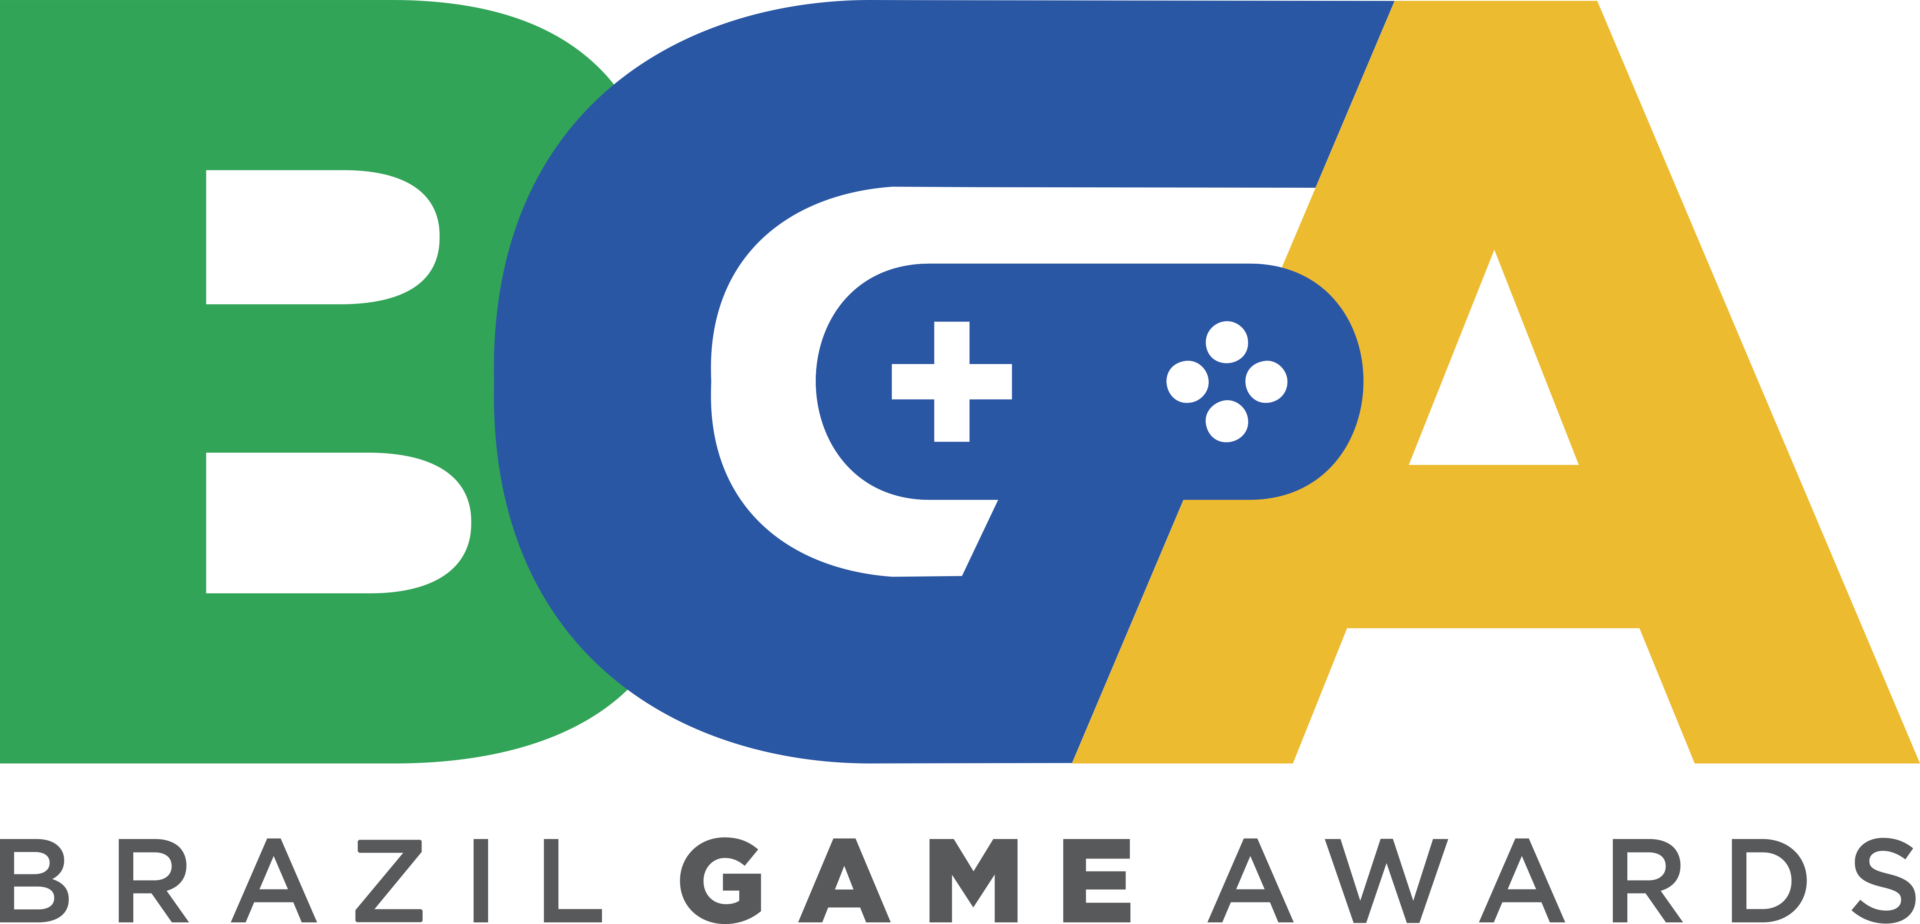 Jogos: Veja os jogos indicados do Brazil Game Awards 2020